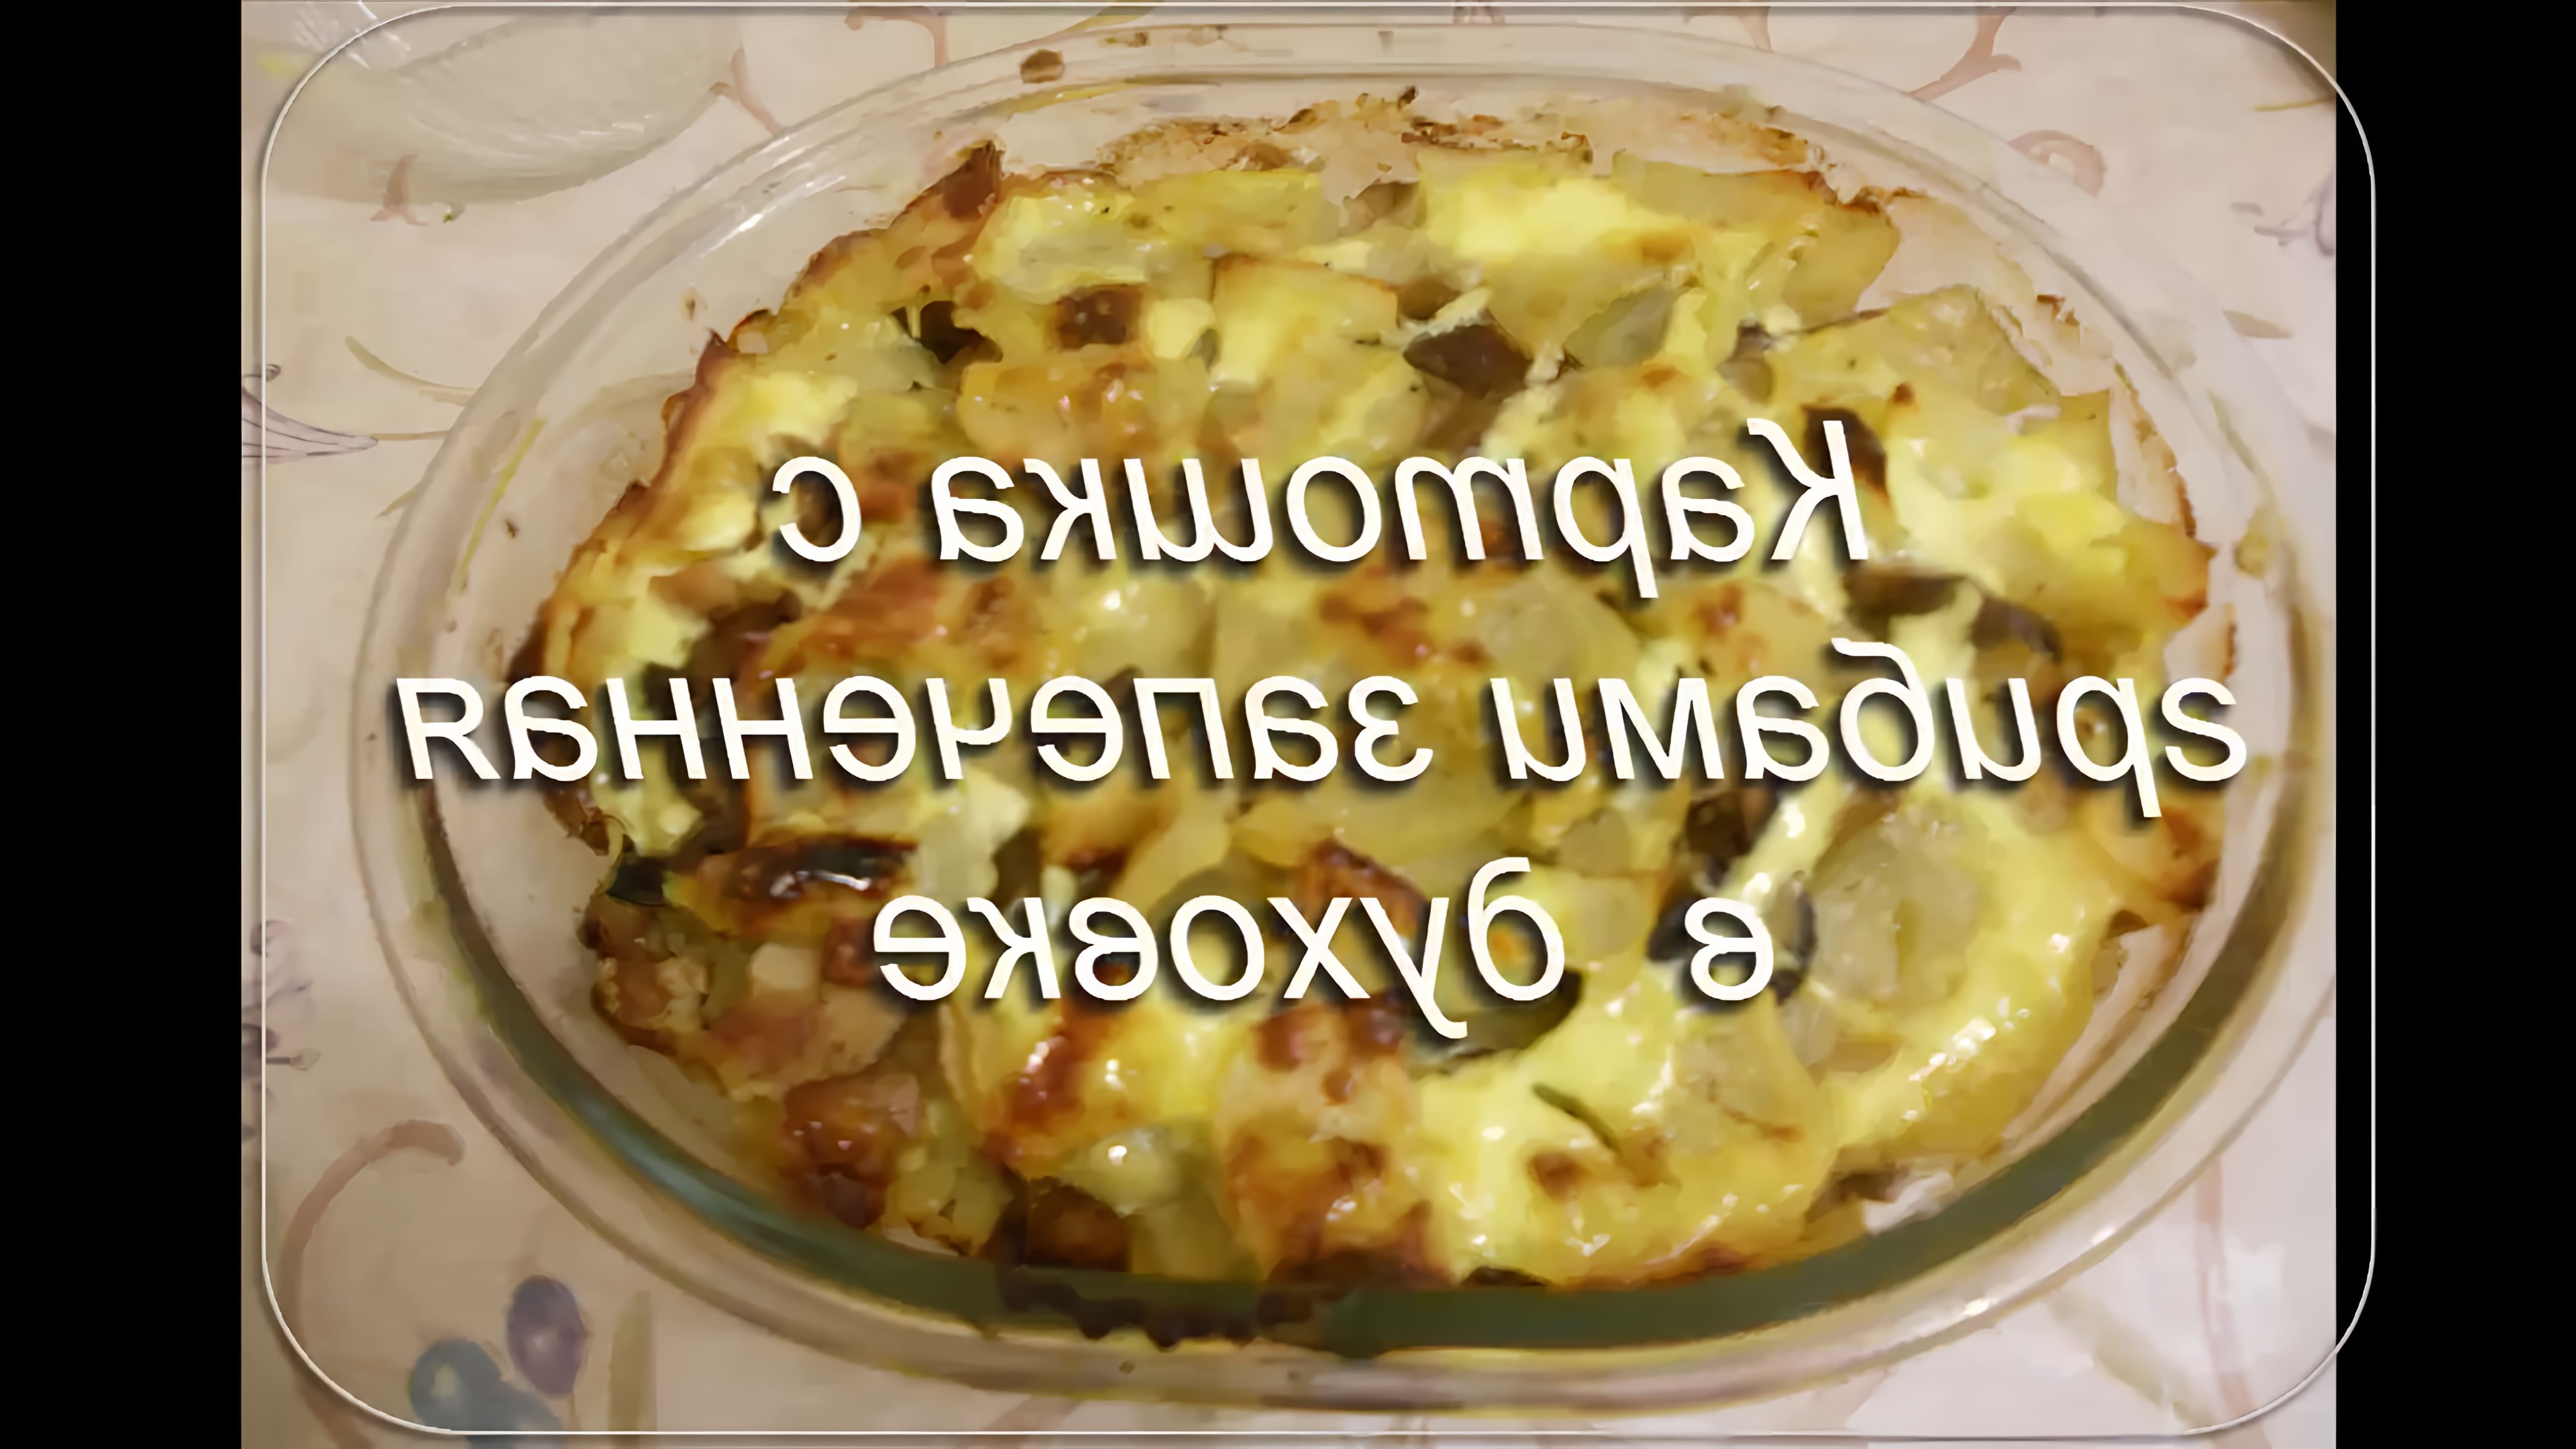 В этом видео демонстрируется процесс приготовления постной картошки с грибами в духовке